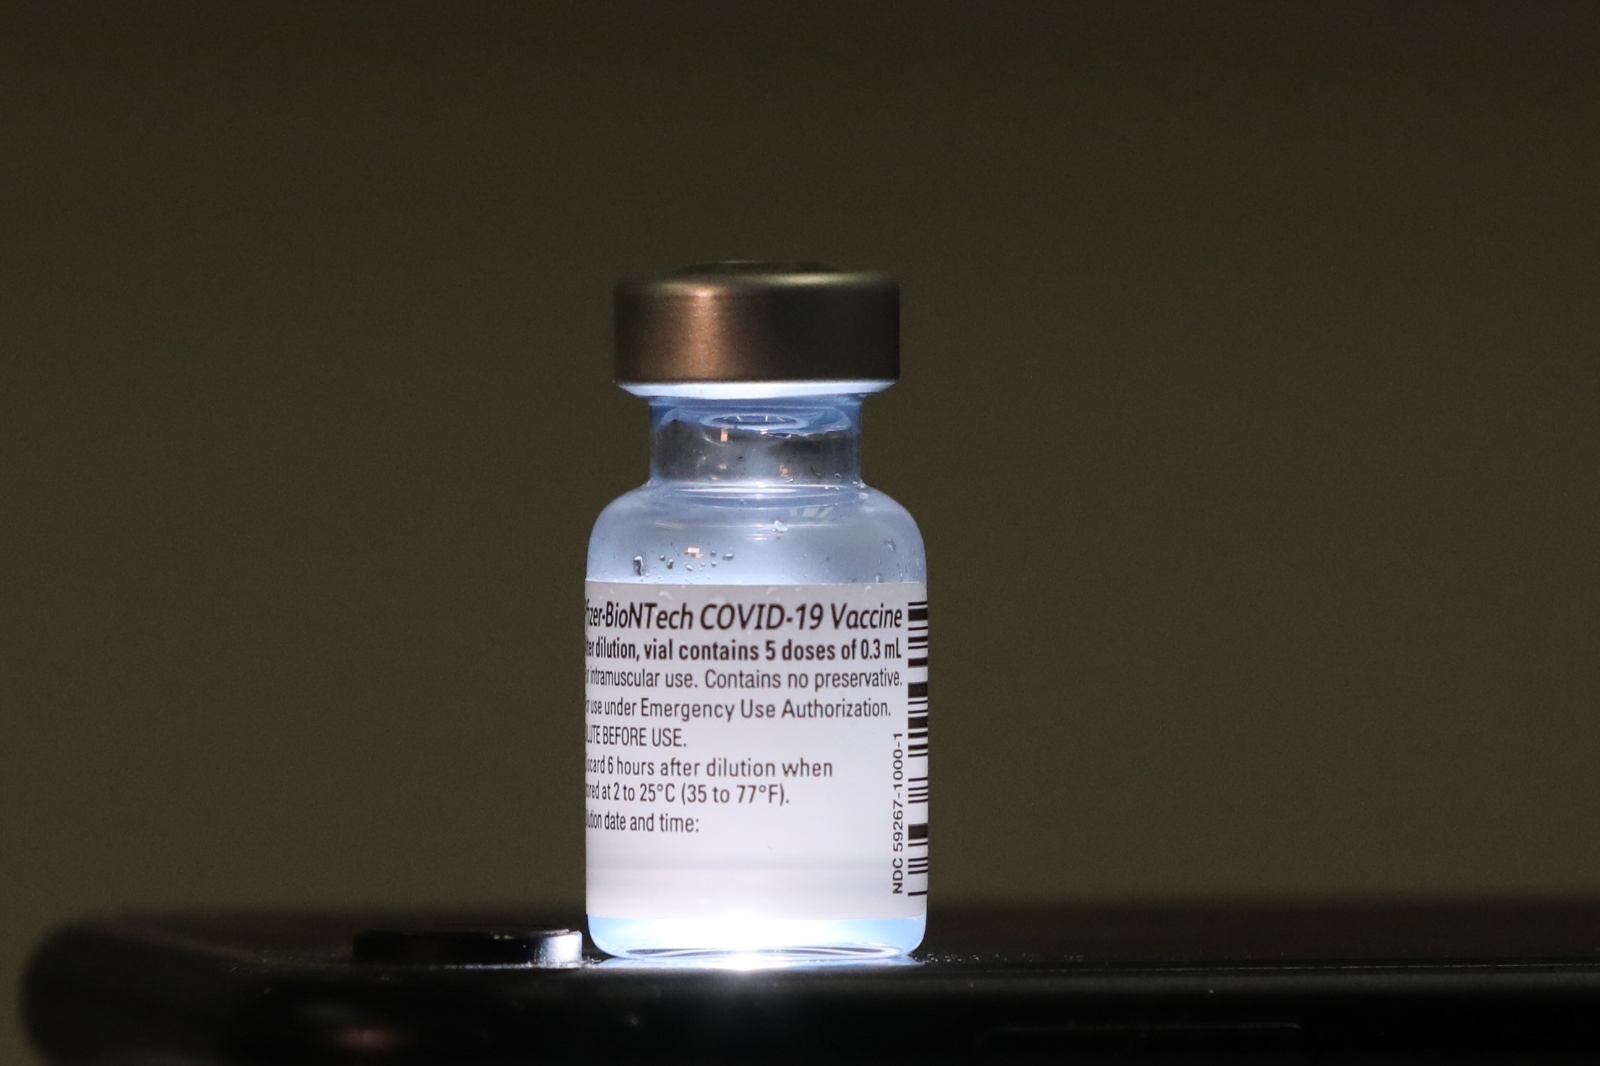 Japonya’da Pfizer-BioNTech aşısının 12 yaş ve üzeri için kullanımına onay